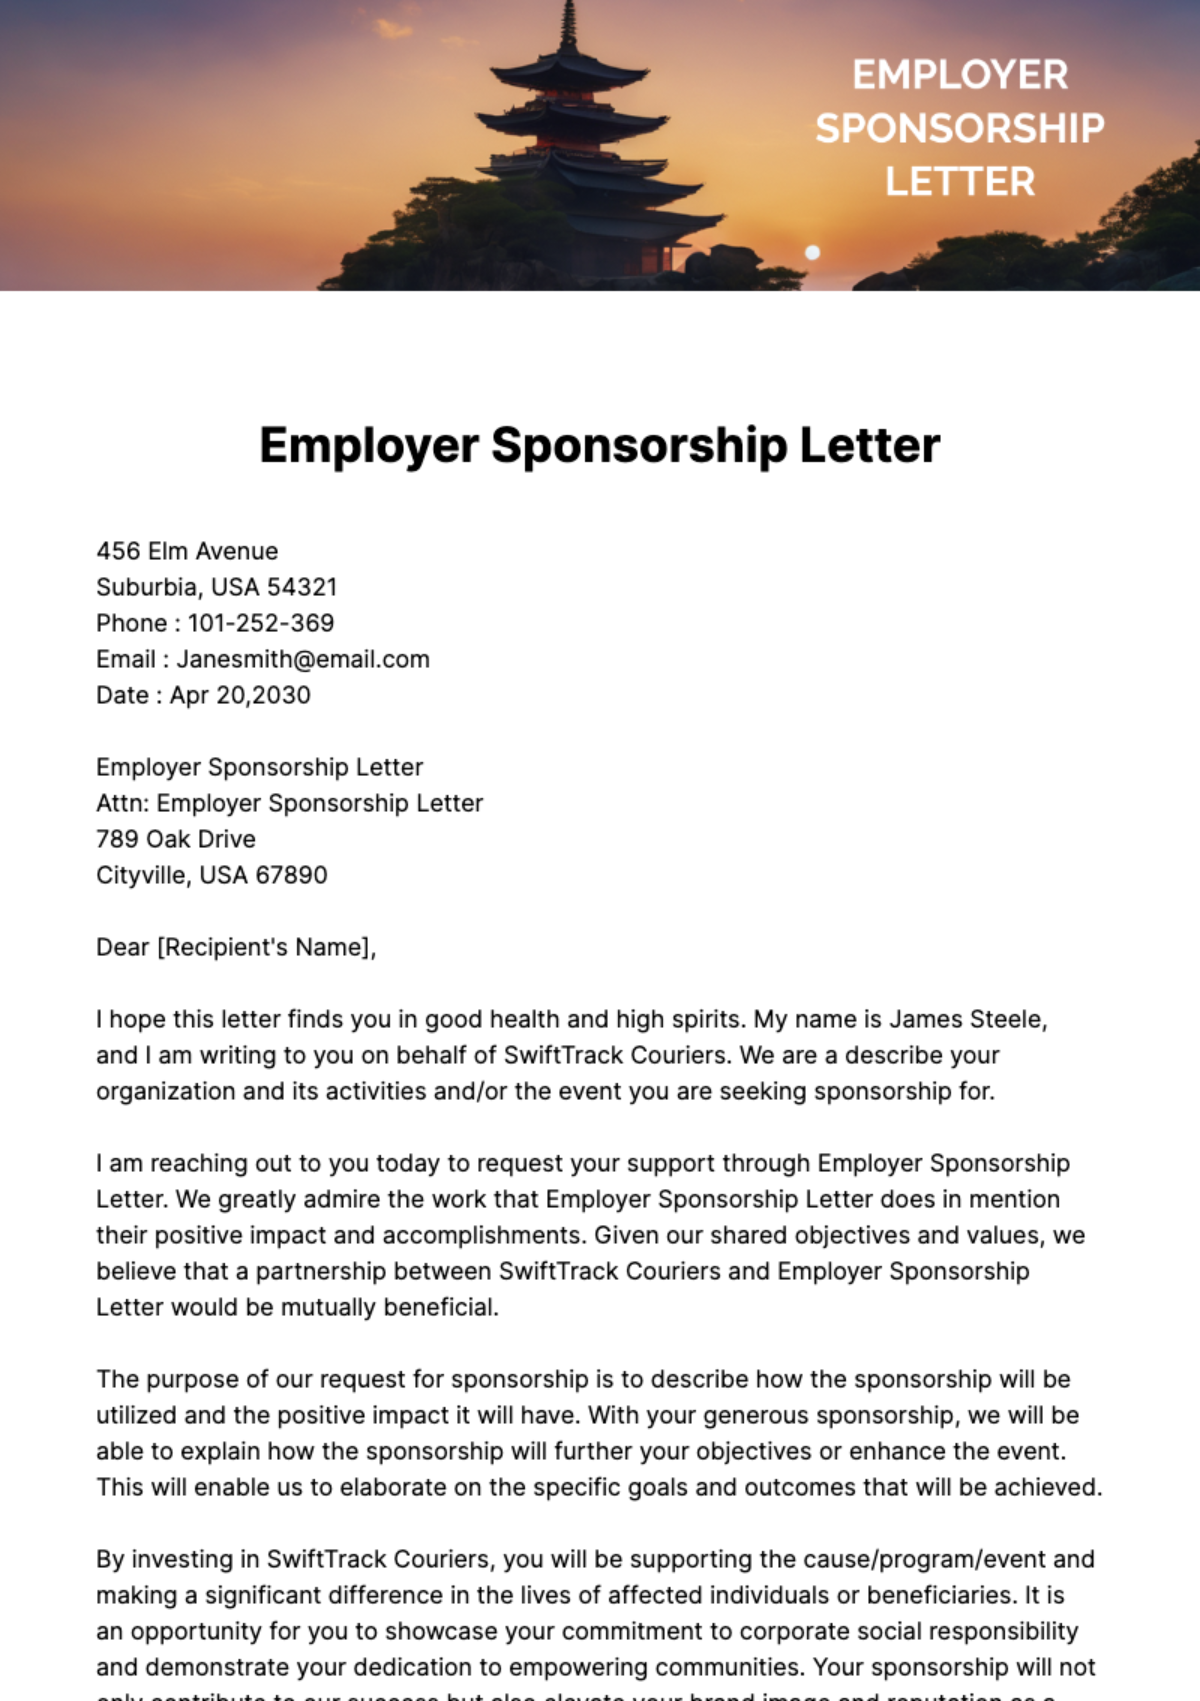 Free Employer Sponsorship Letter Template